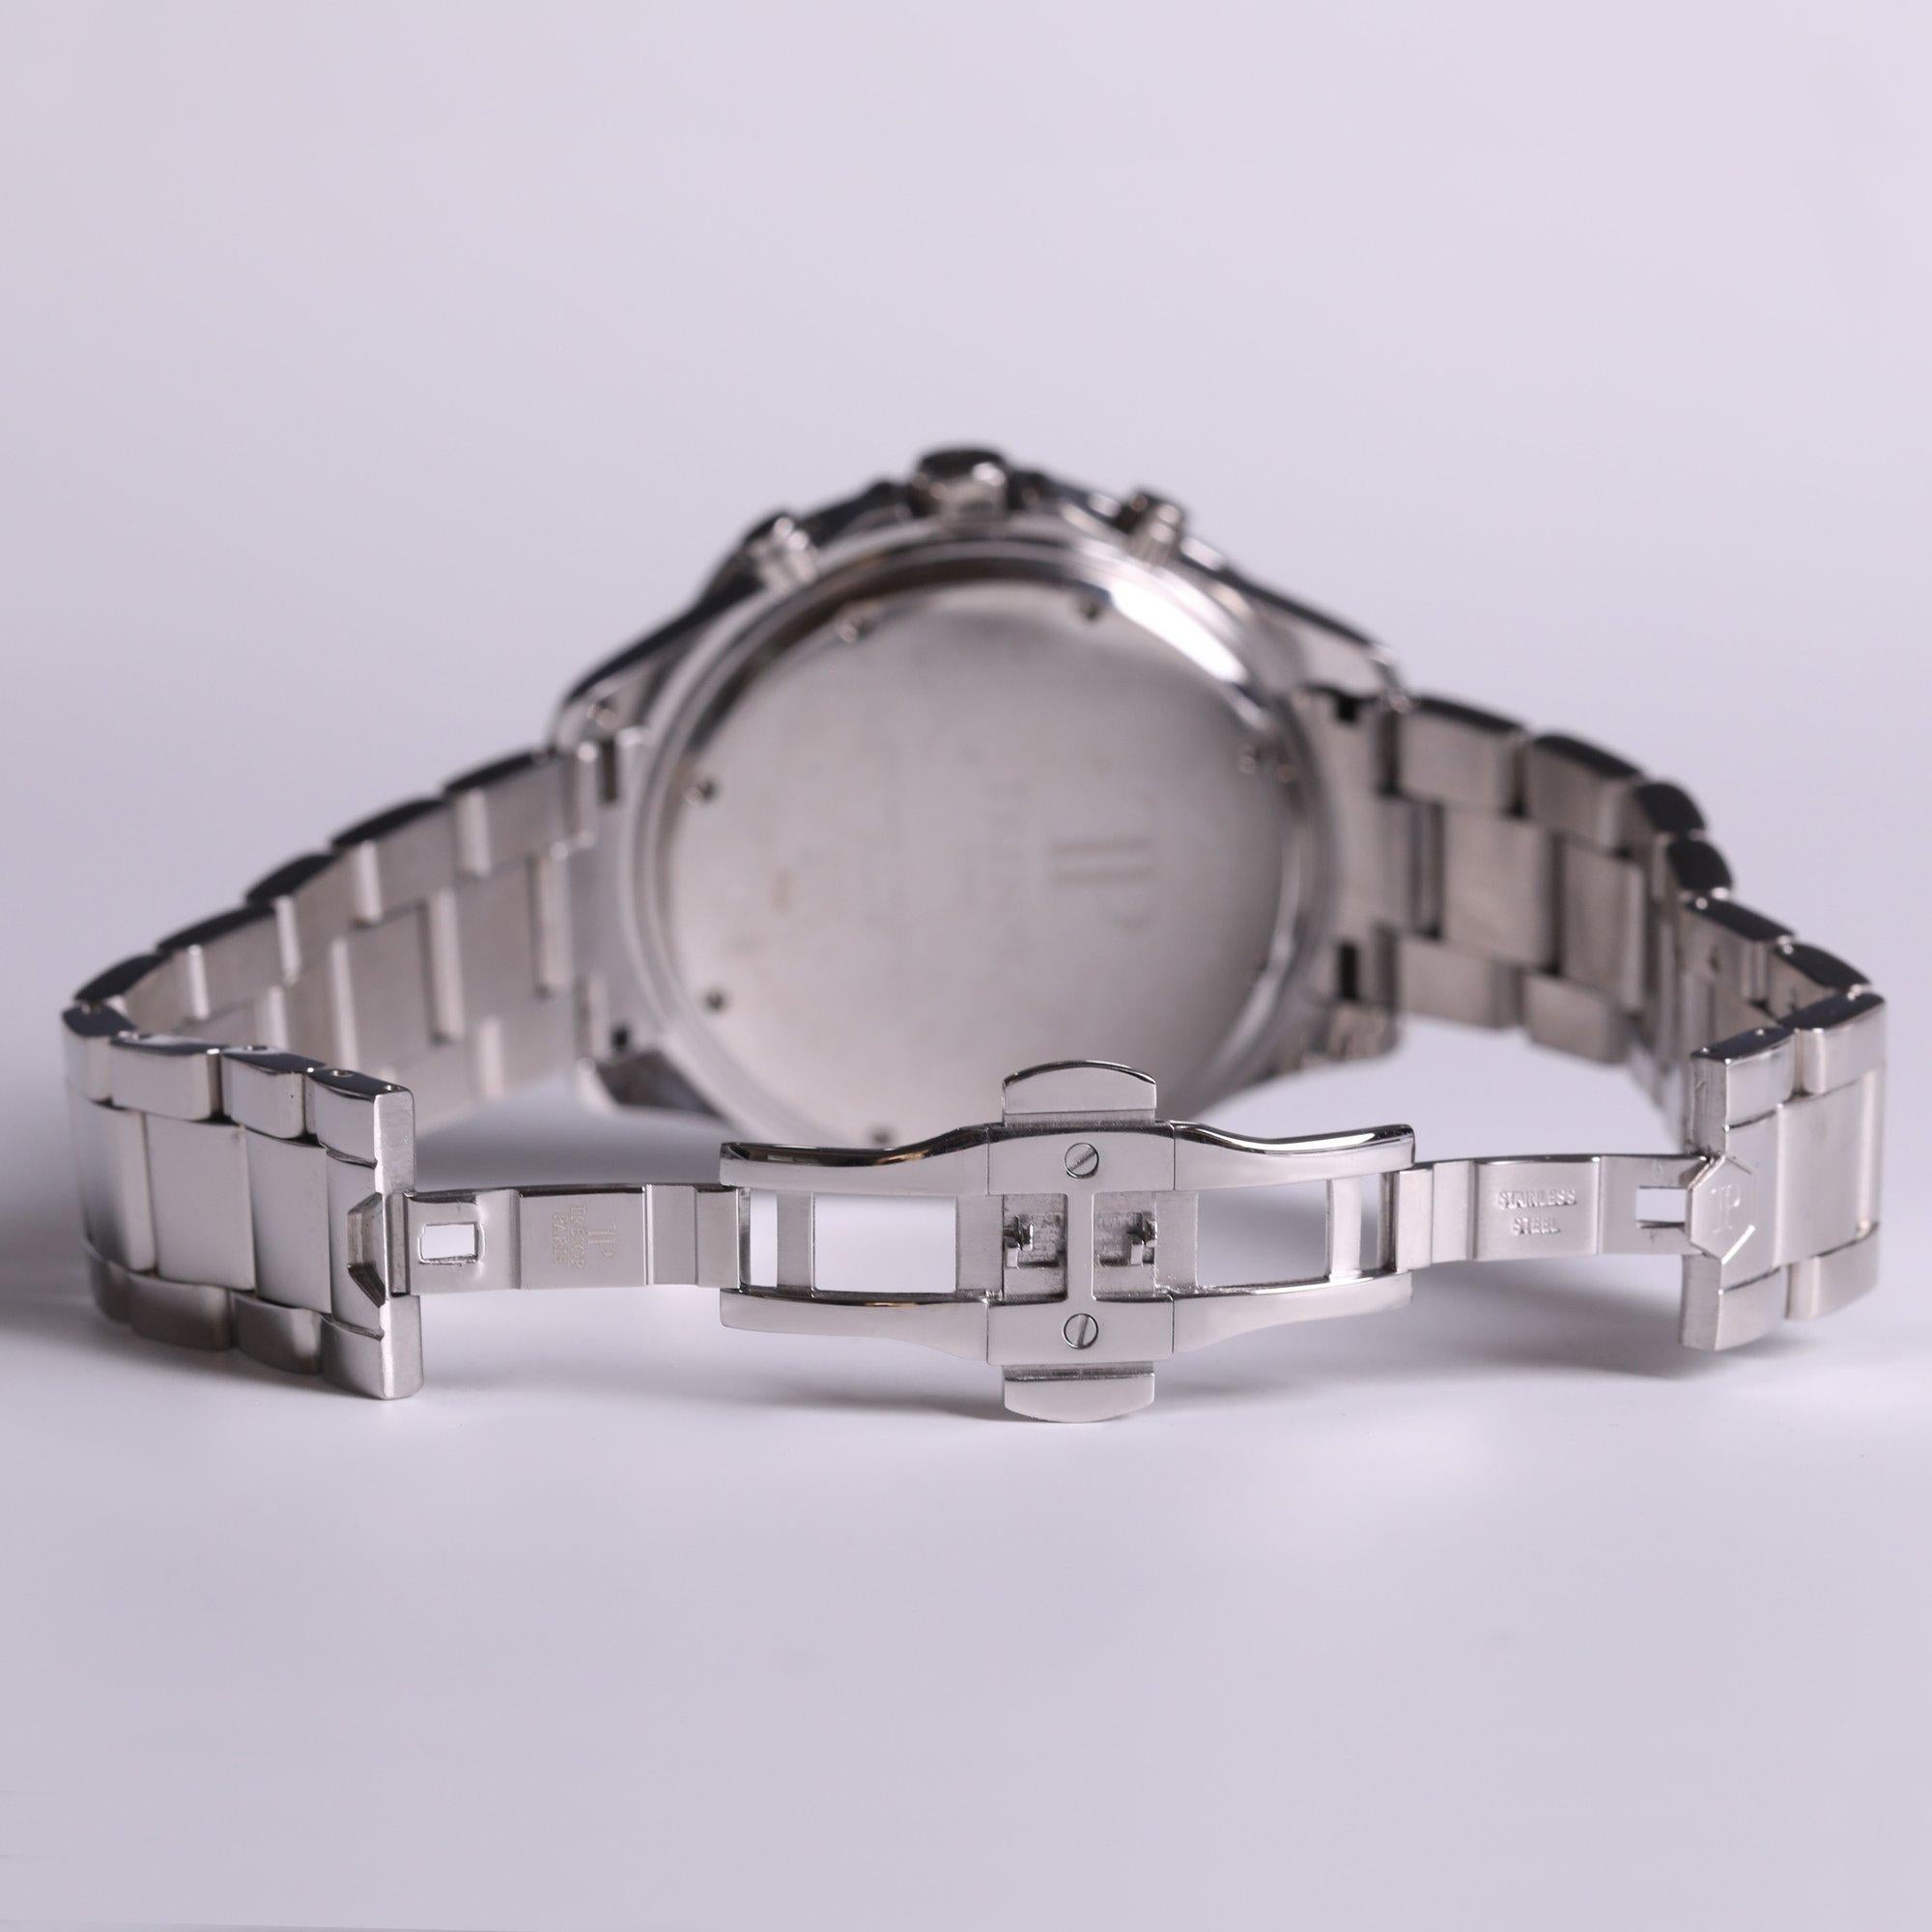 Sophistiquée et glamour, cette montre fabriquée en Suisse est parfaite pour toutes les garde-robes. Associée au plaquage en or blanc 18 ct, la magnifique lunette de Tresor Paris respire le glamour, rendant cette pièce vraiment irrésistible.